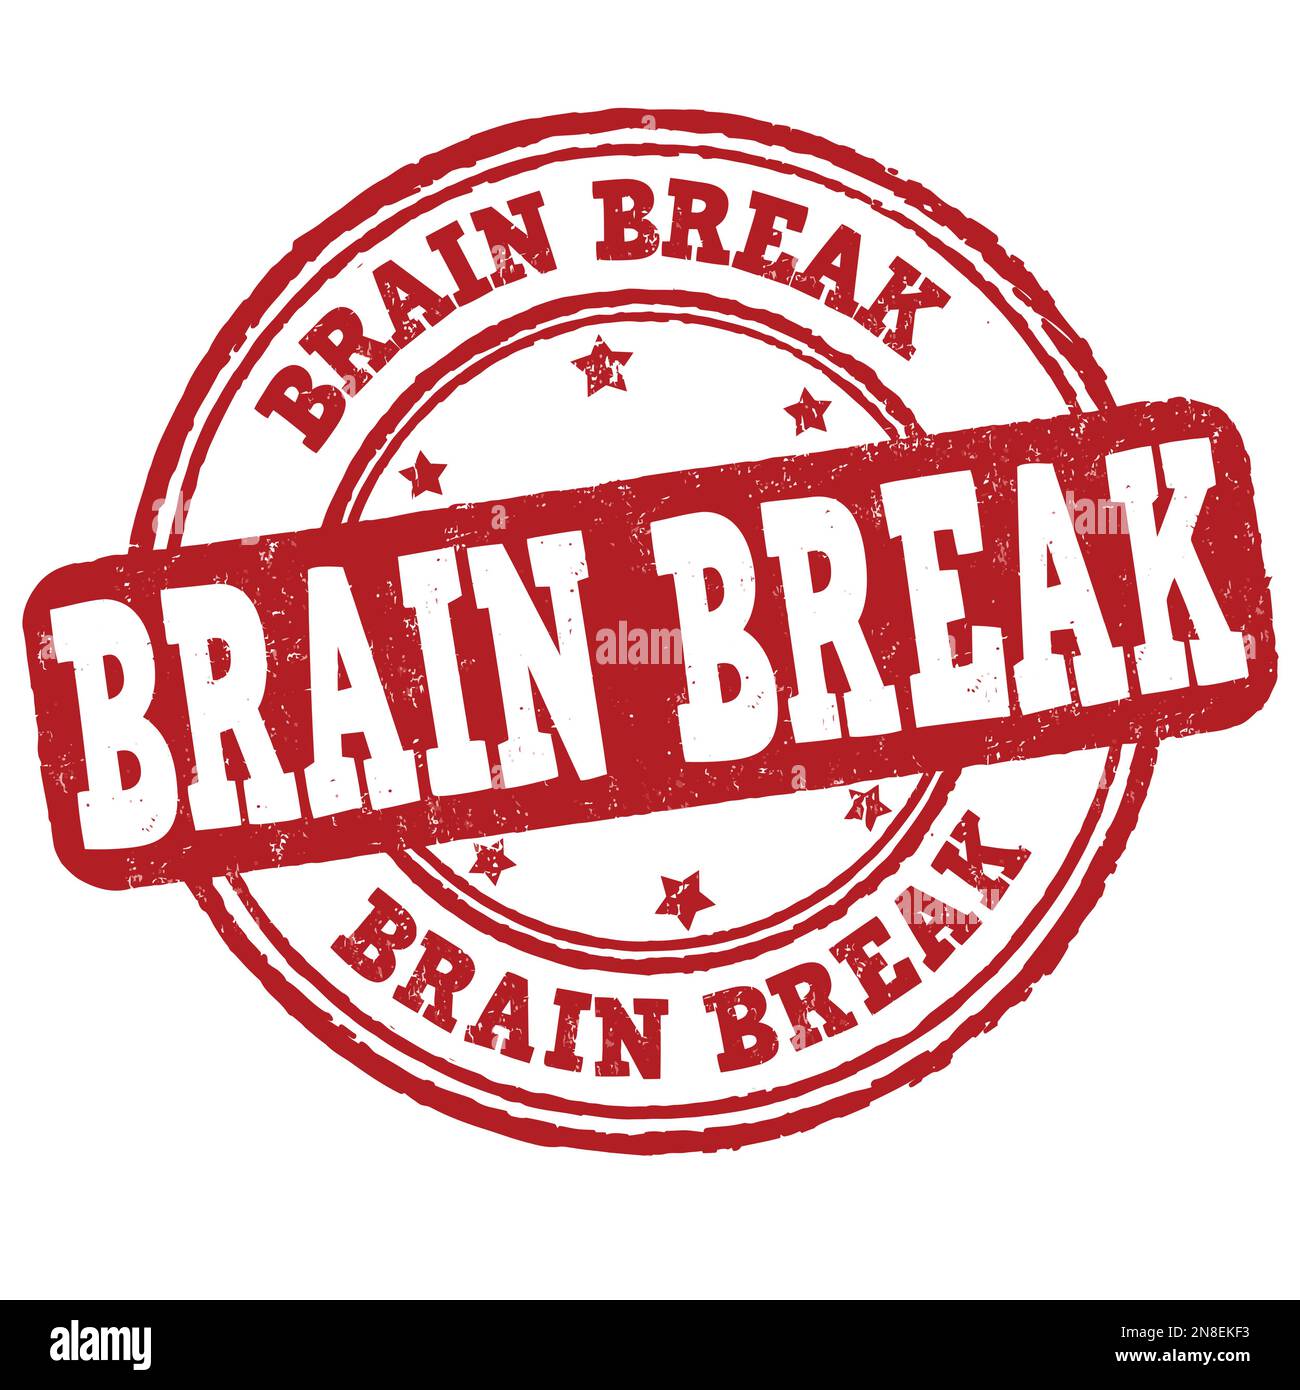 Brain break grunge rubber stamp on white background, vector illustration Stock Vector